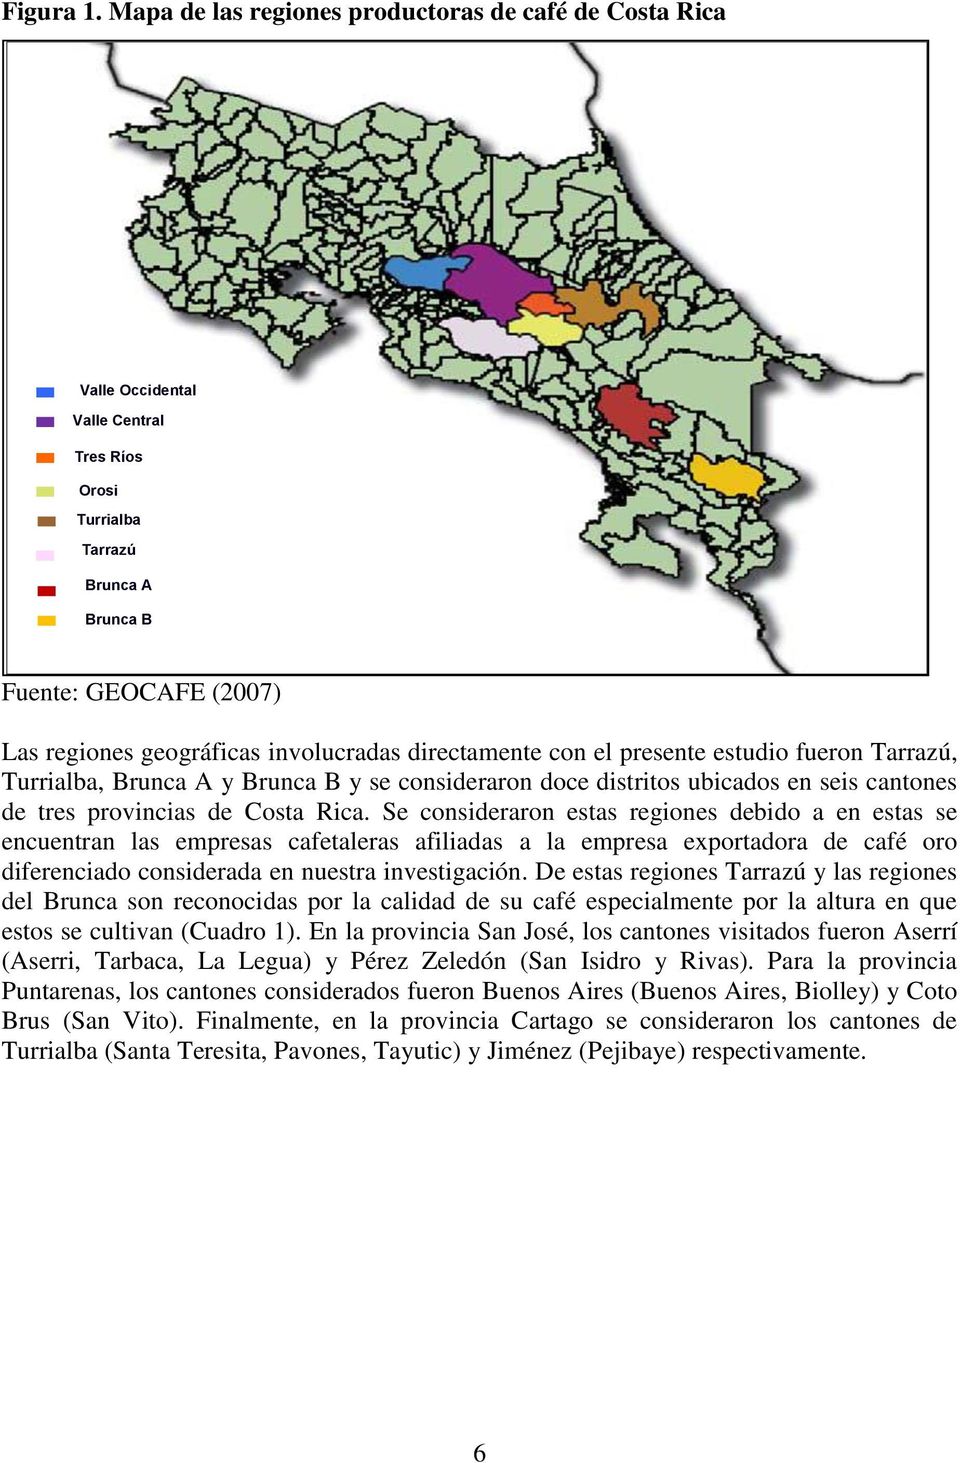 directamente con el presente estudio fueron Tarrazú, Turrialba, Brunca A y Brunca B y se consideraron doce distritos ubicados en seis cantones de tres provincias de Costa Rica.